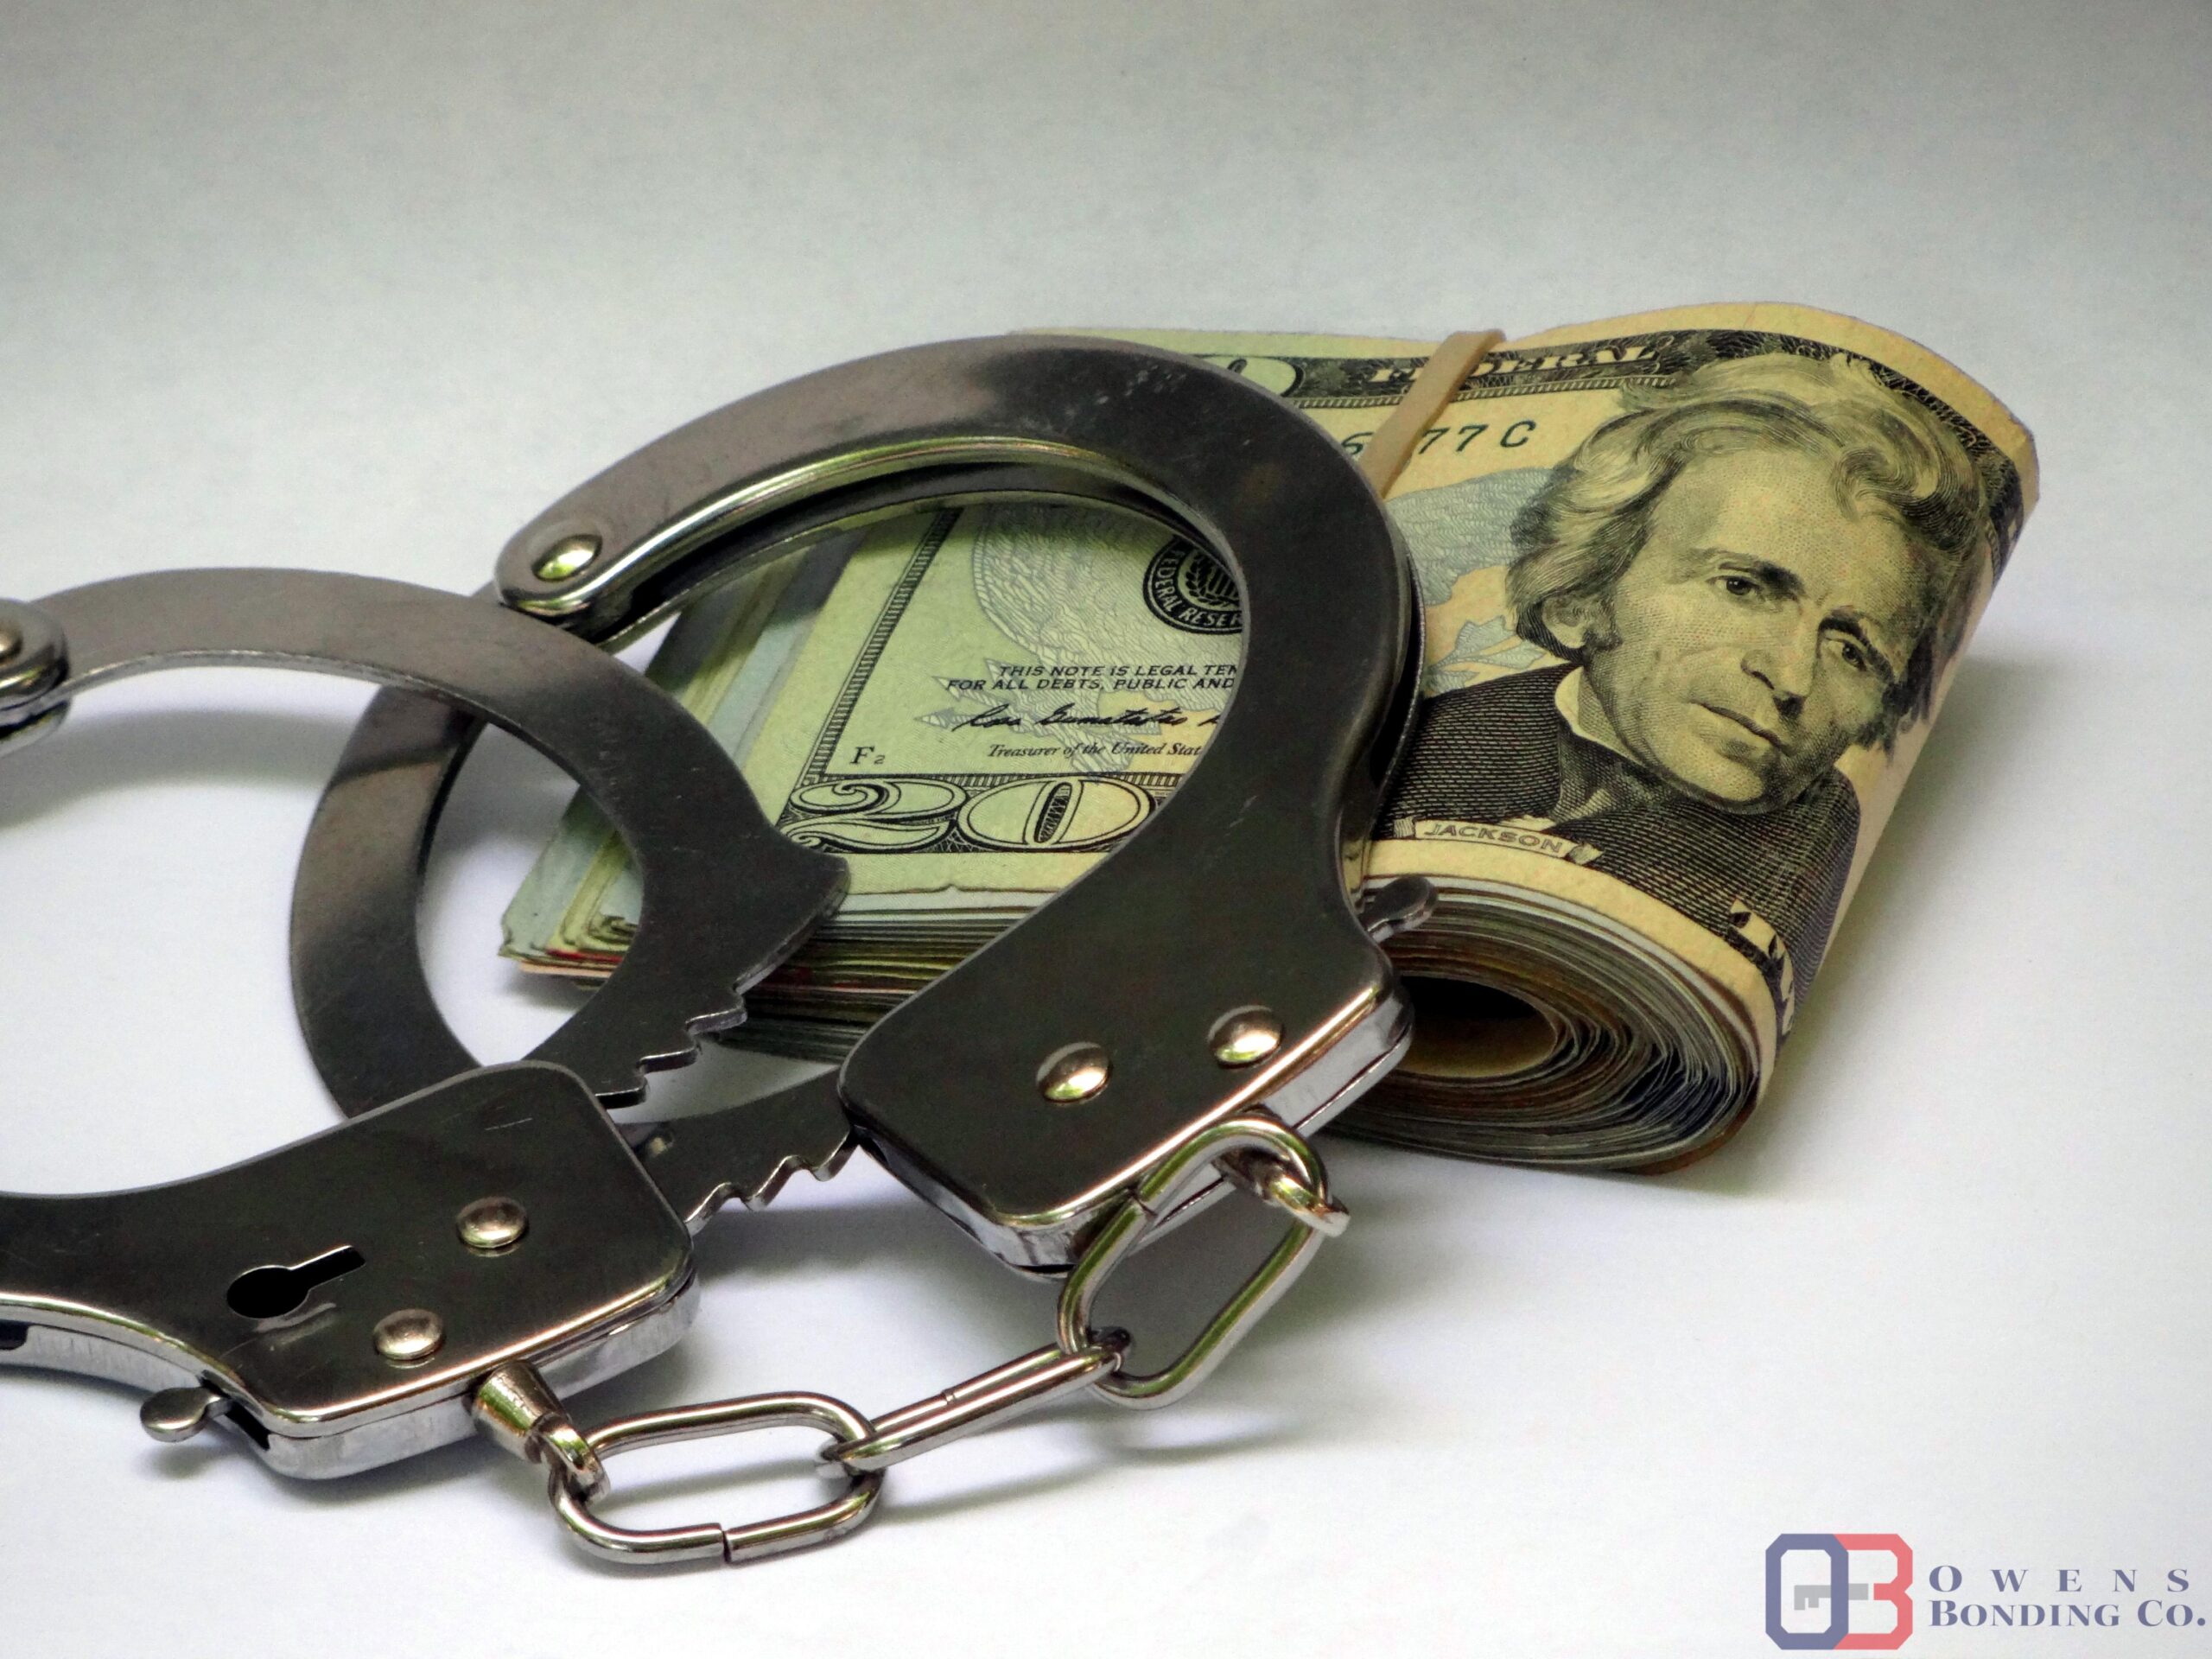 Cash Under Handcuffs